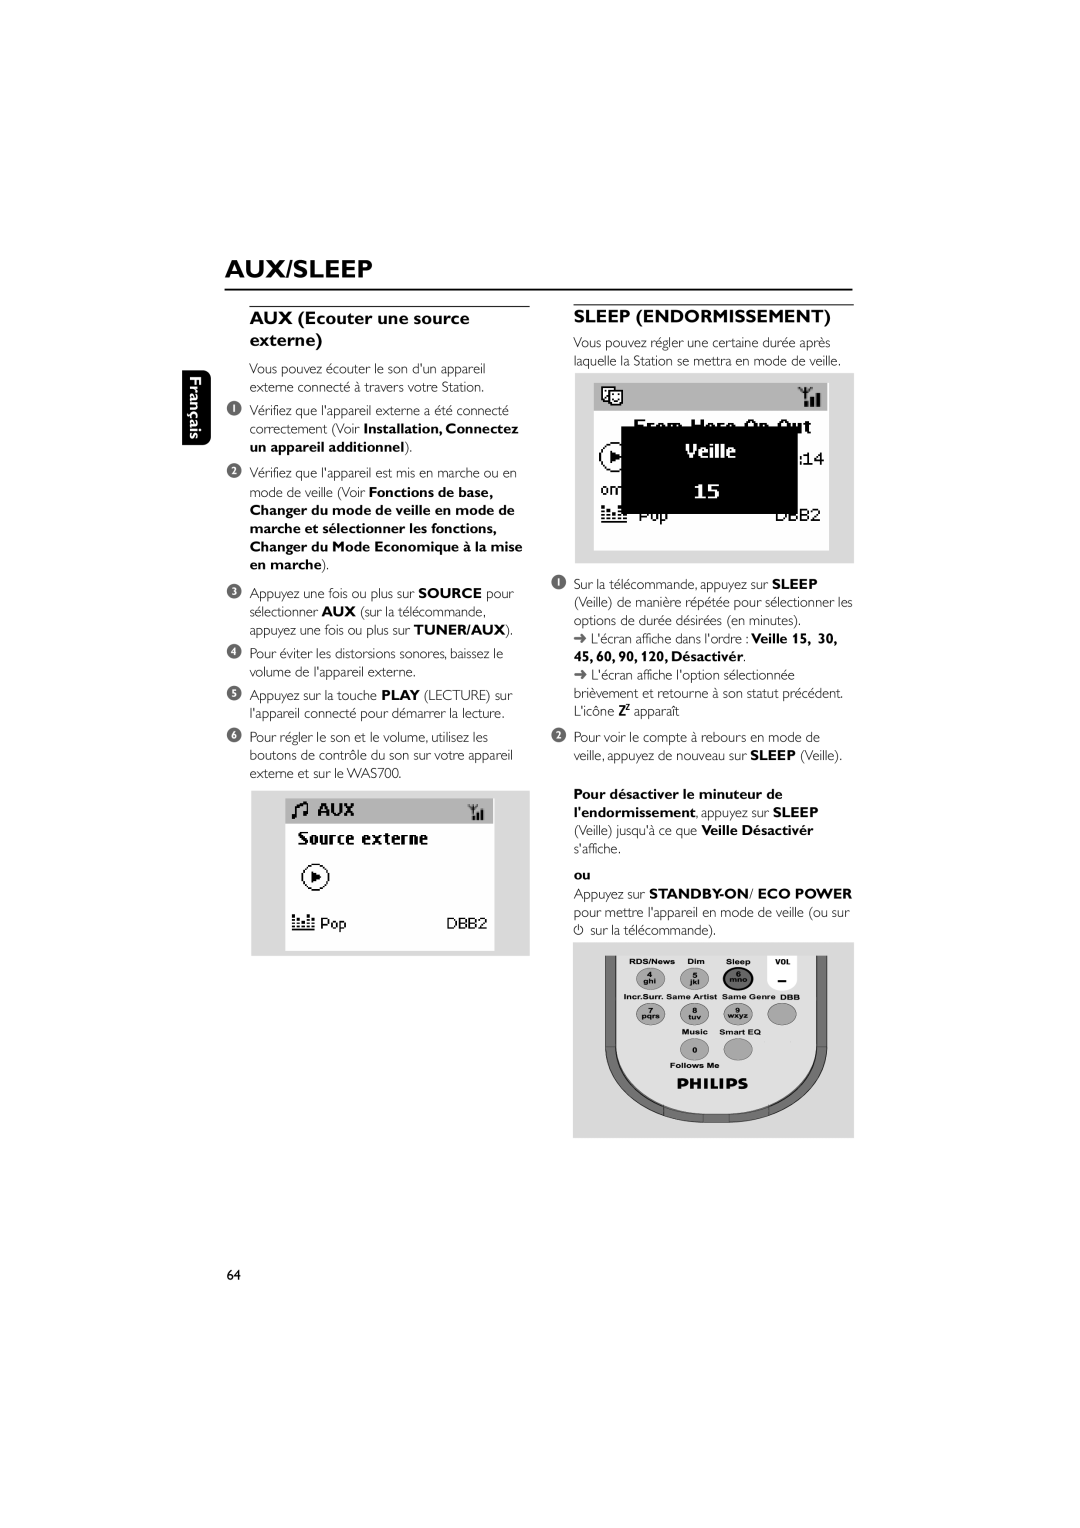 Philips WAS700 owner manual Aux/Sleep, AUX Ecouter une source externe, Sleep Endormissement, Français 